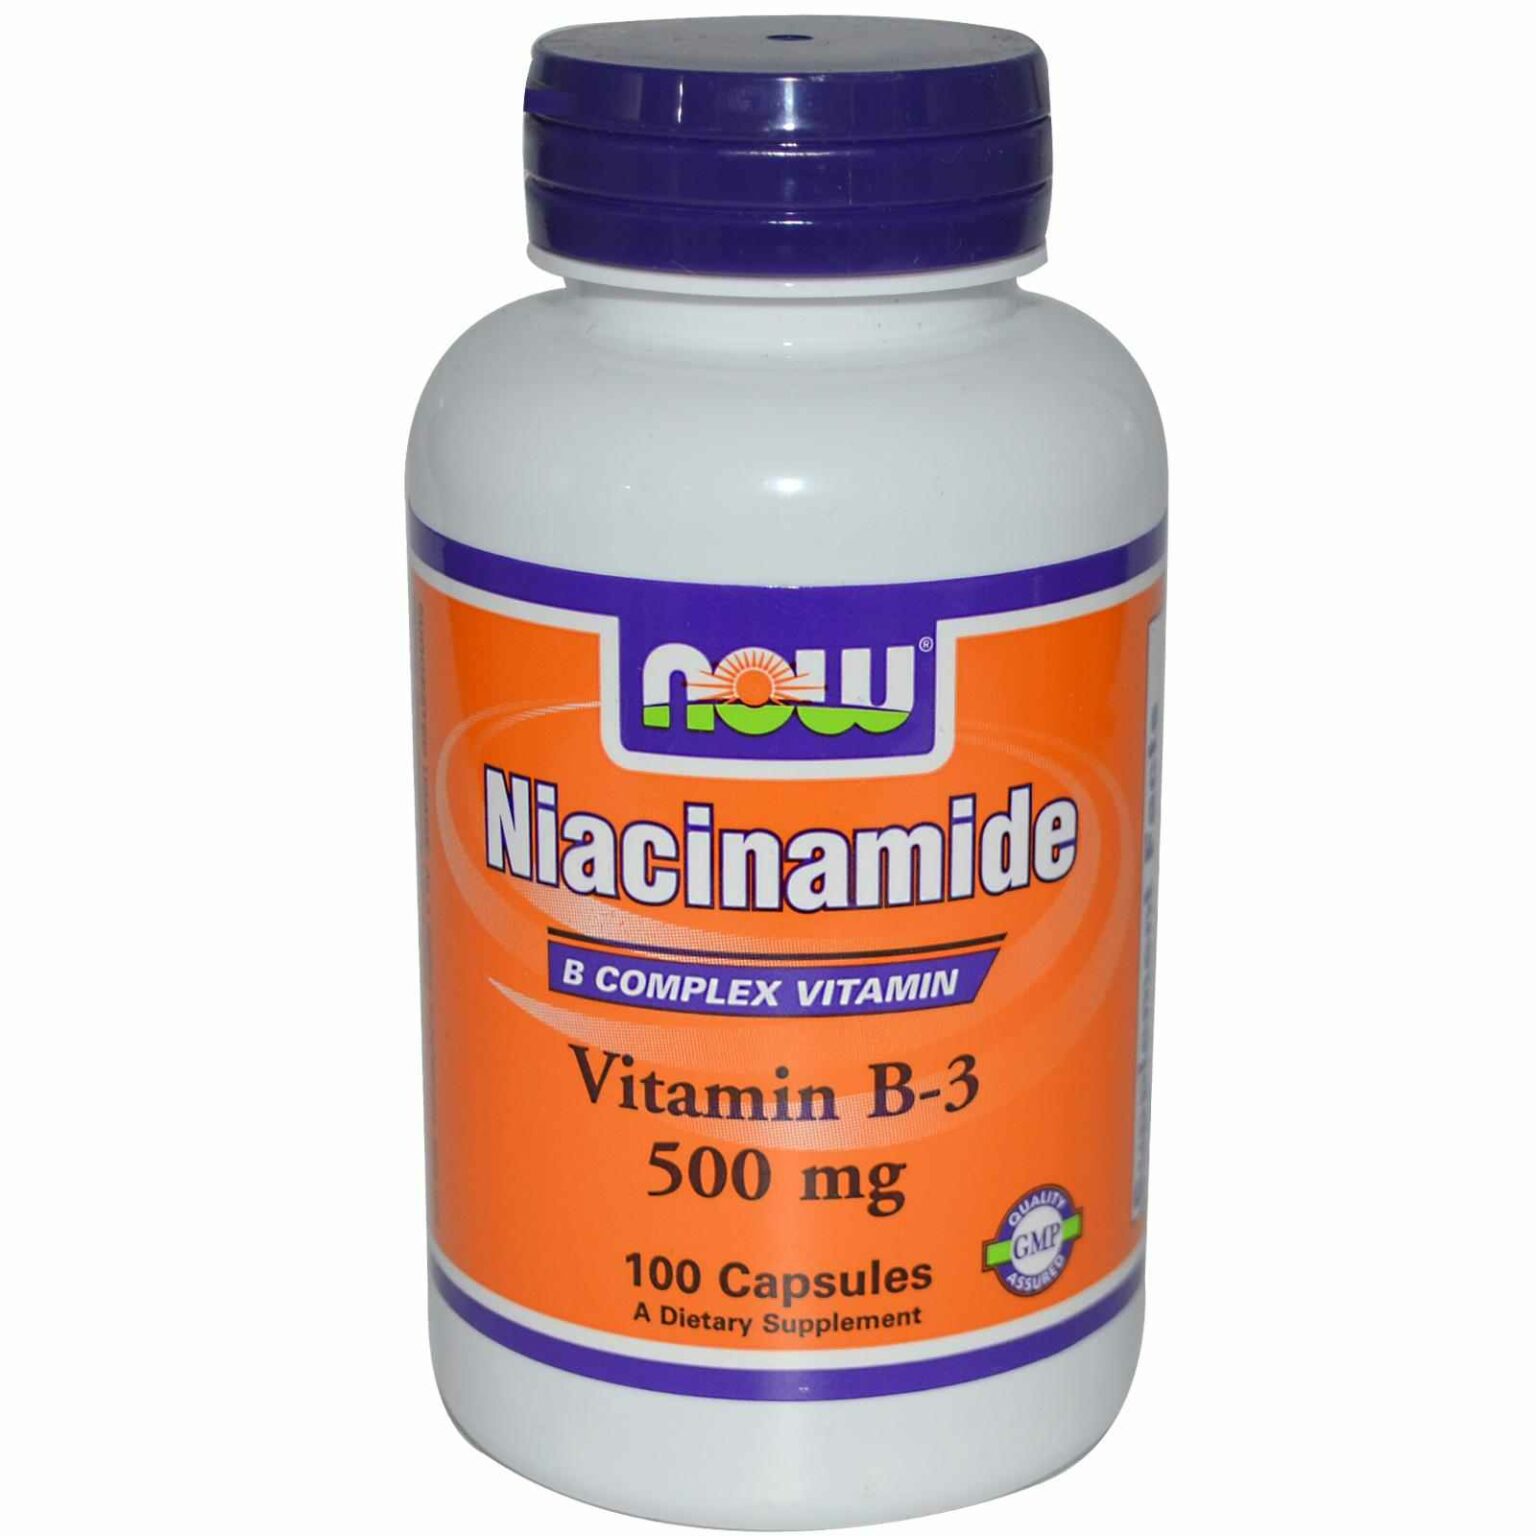 معلومات عن المكمل الغذائي نياسيناميد Niacinamide